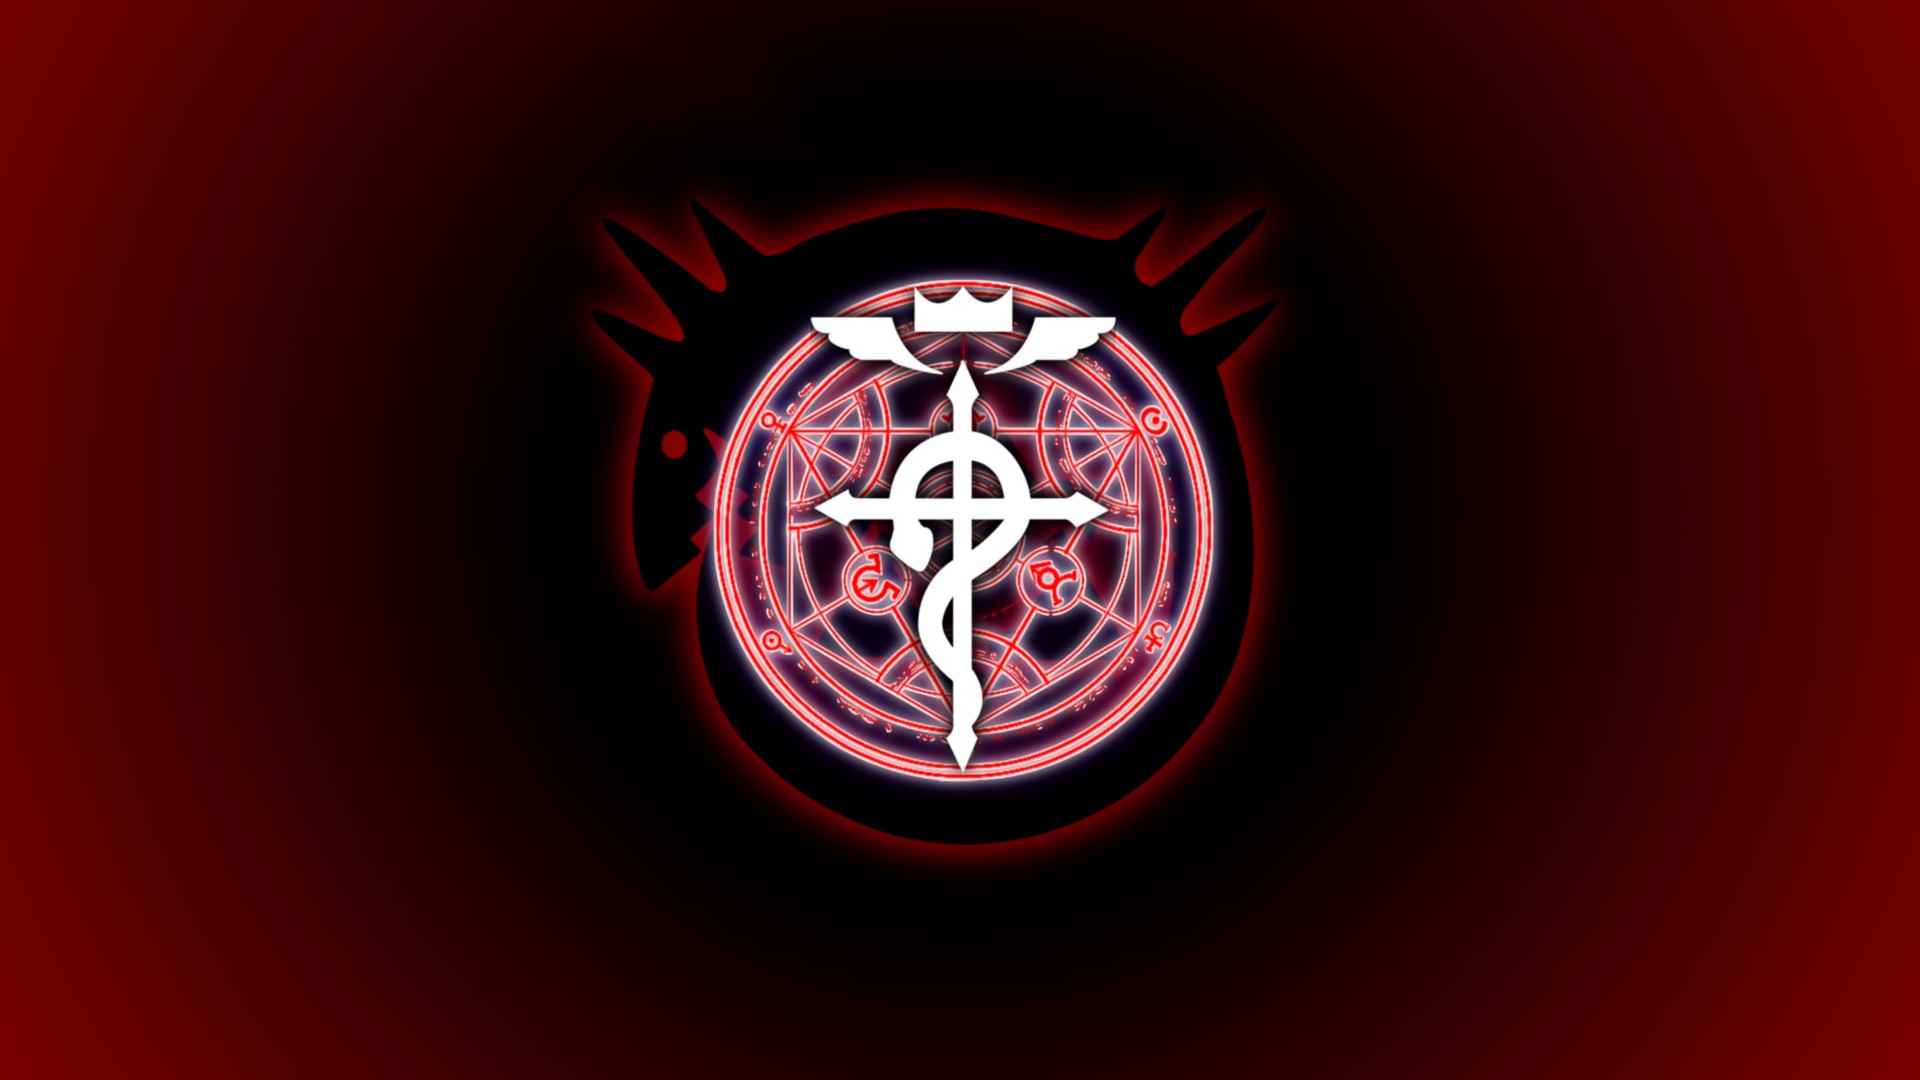 Fullmetal Alchemist Brotherhood Signs